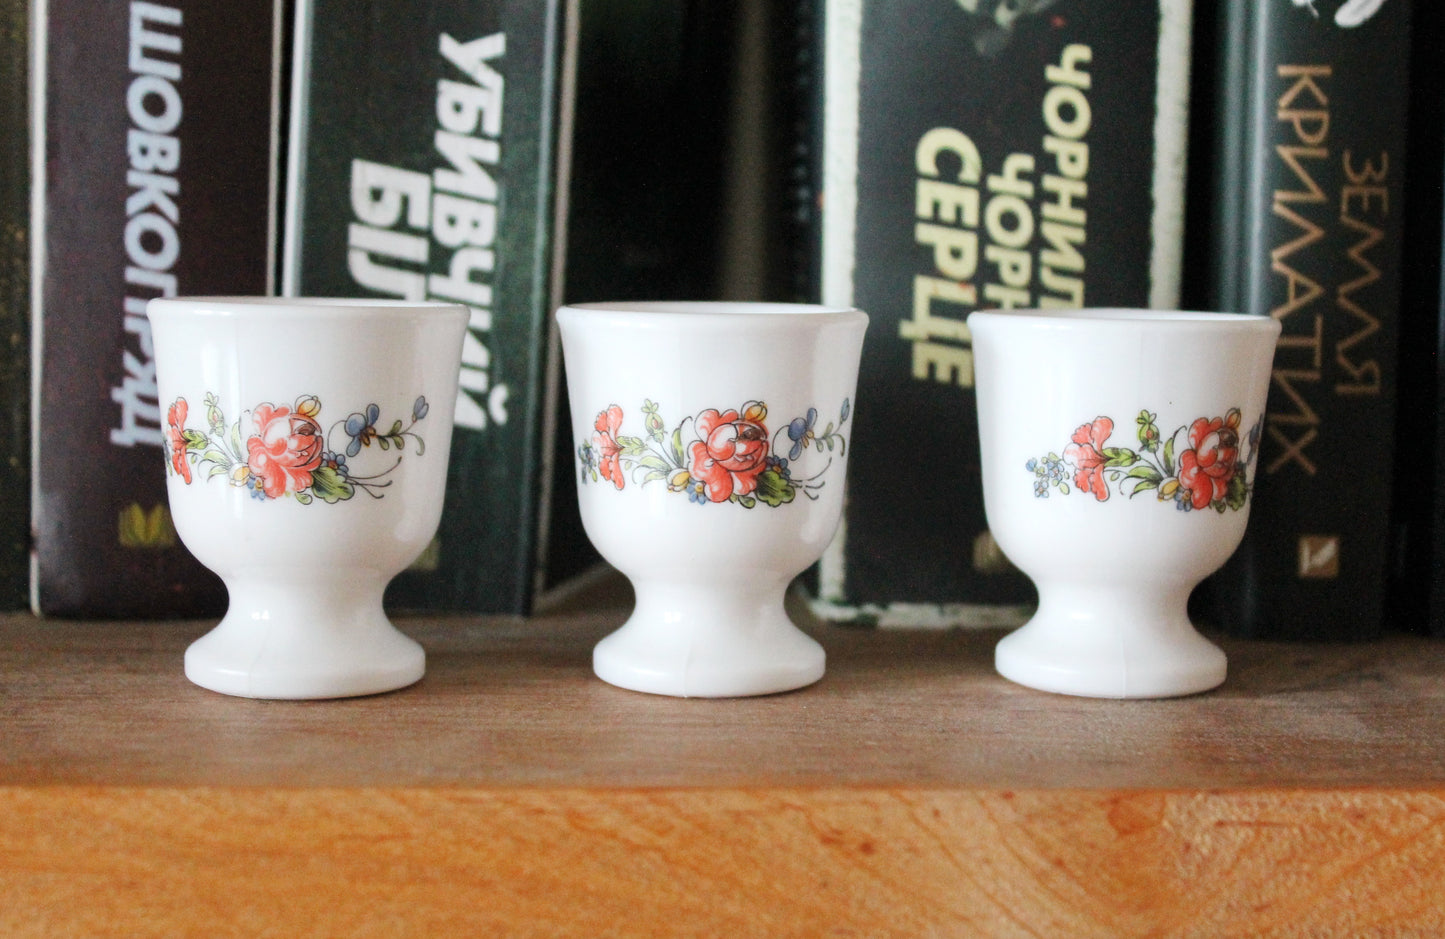 Set of three Vintage porcelain egg holders - 2.3 inches - Vintage France ceramic egg stand - 1980s